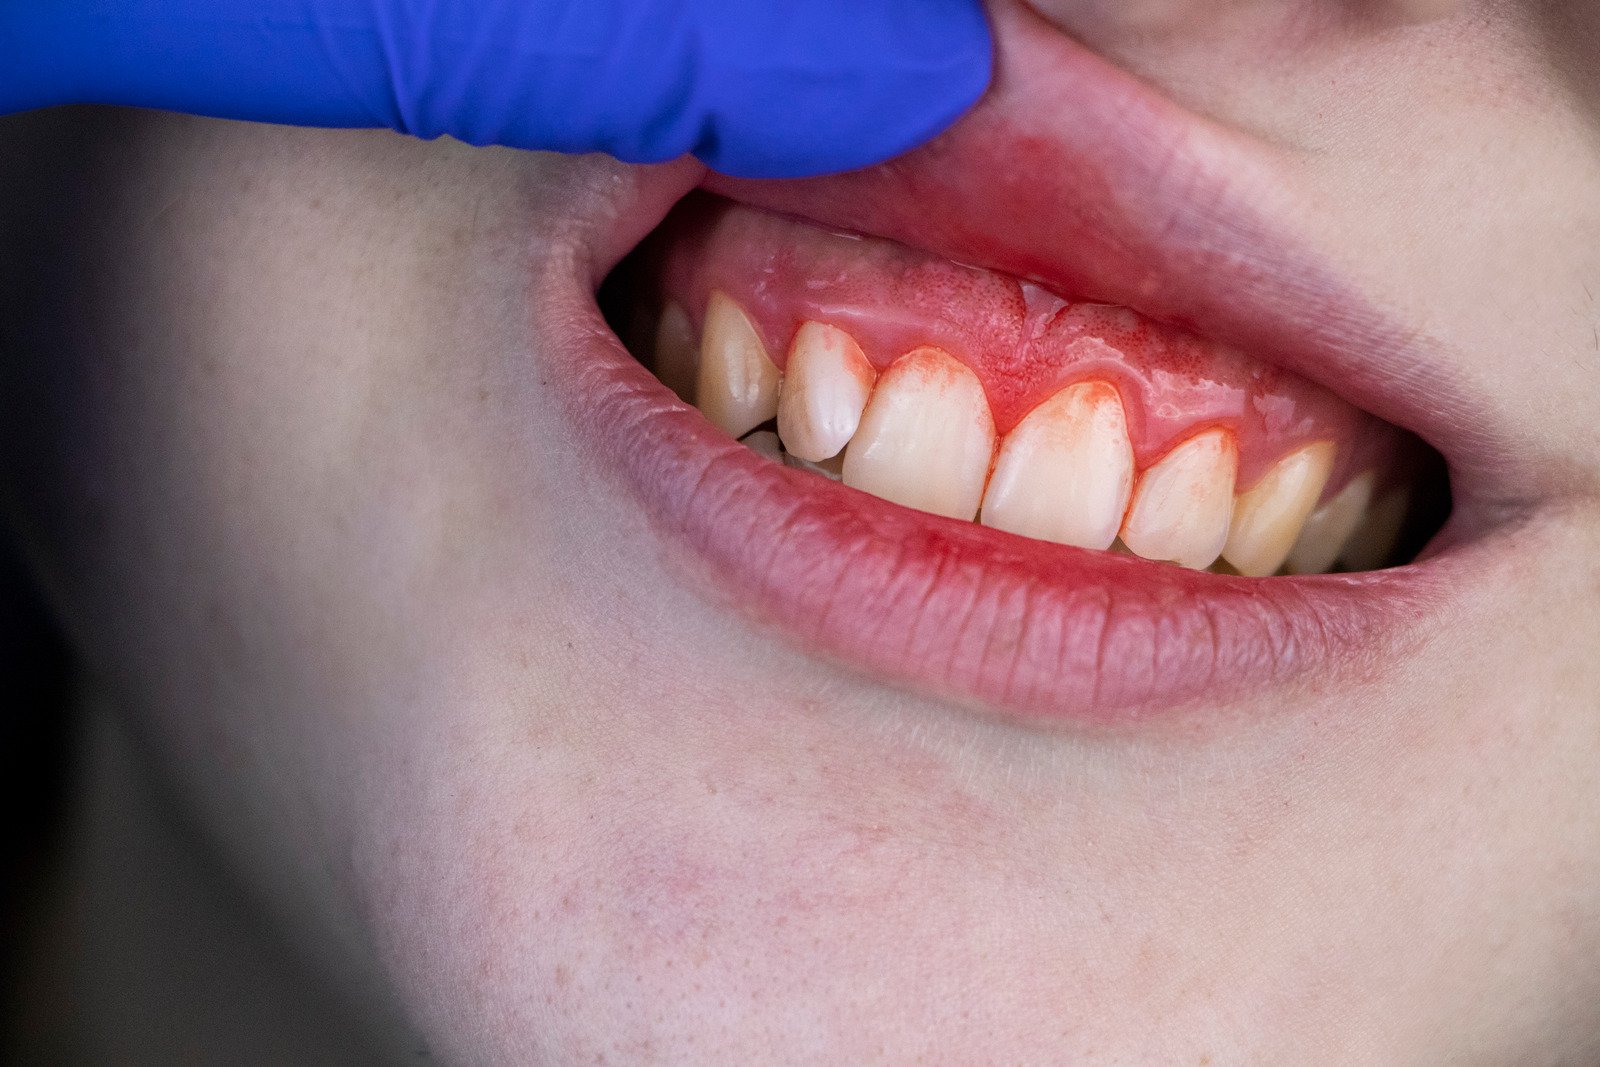 健康的牙齦不會無故地腫脹或流血